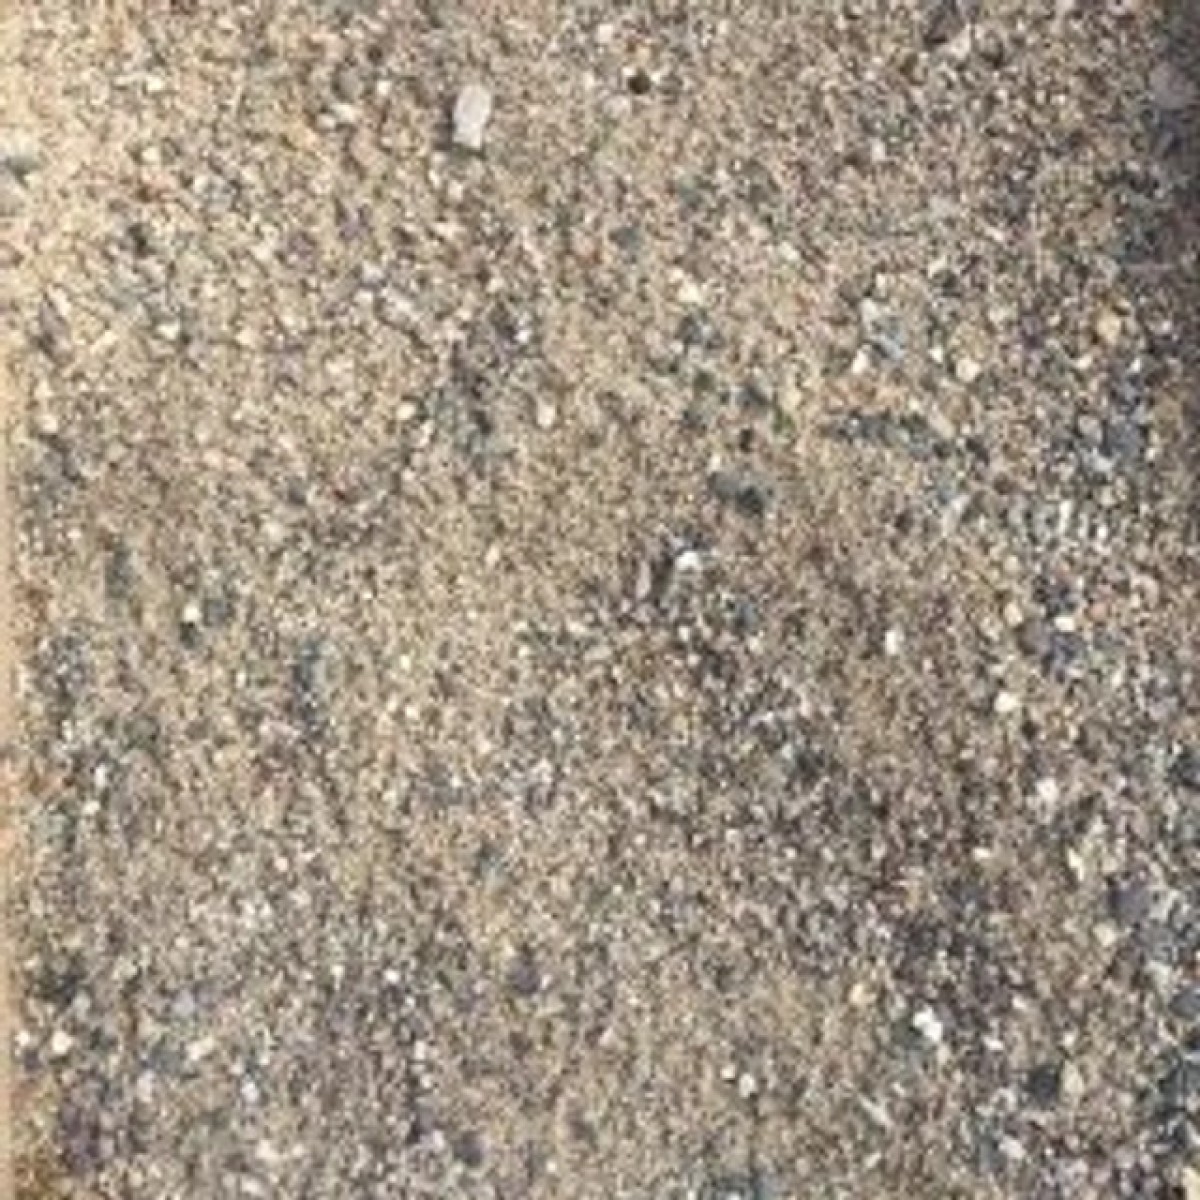 Bulk BAG Concrete Sand